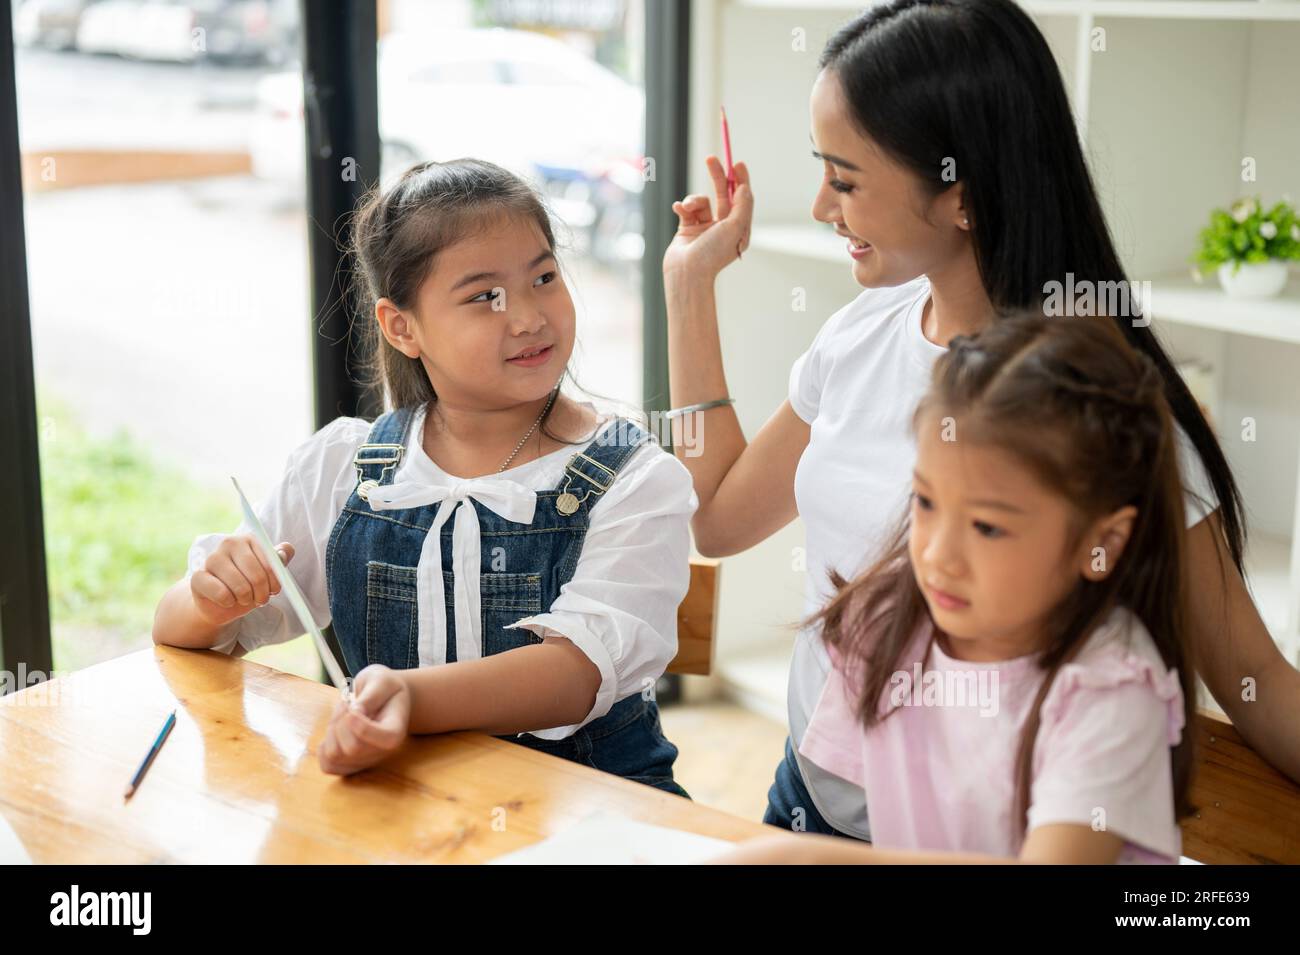 Una graziosa giovane ragazza asiatica che si diverte a studiare con un insegnante privato, prendendo una lezione supplementare a casa. Bambini dell'asilo, studen della scuola elementare Foto Stock